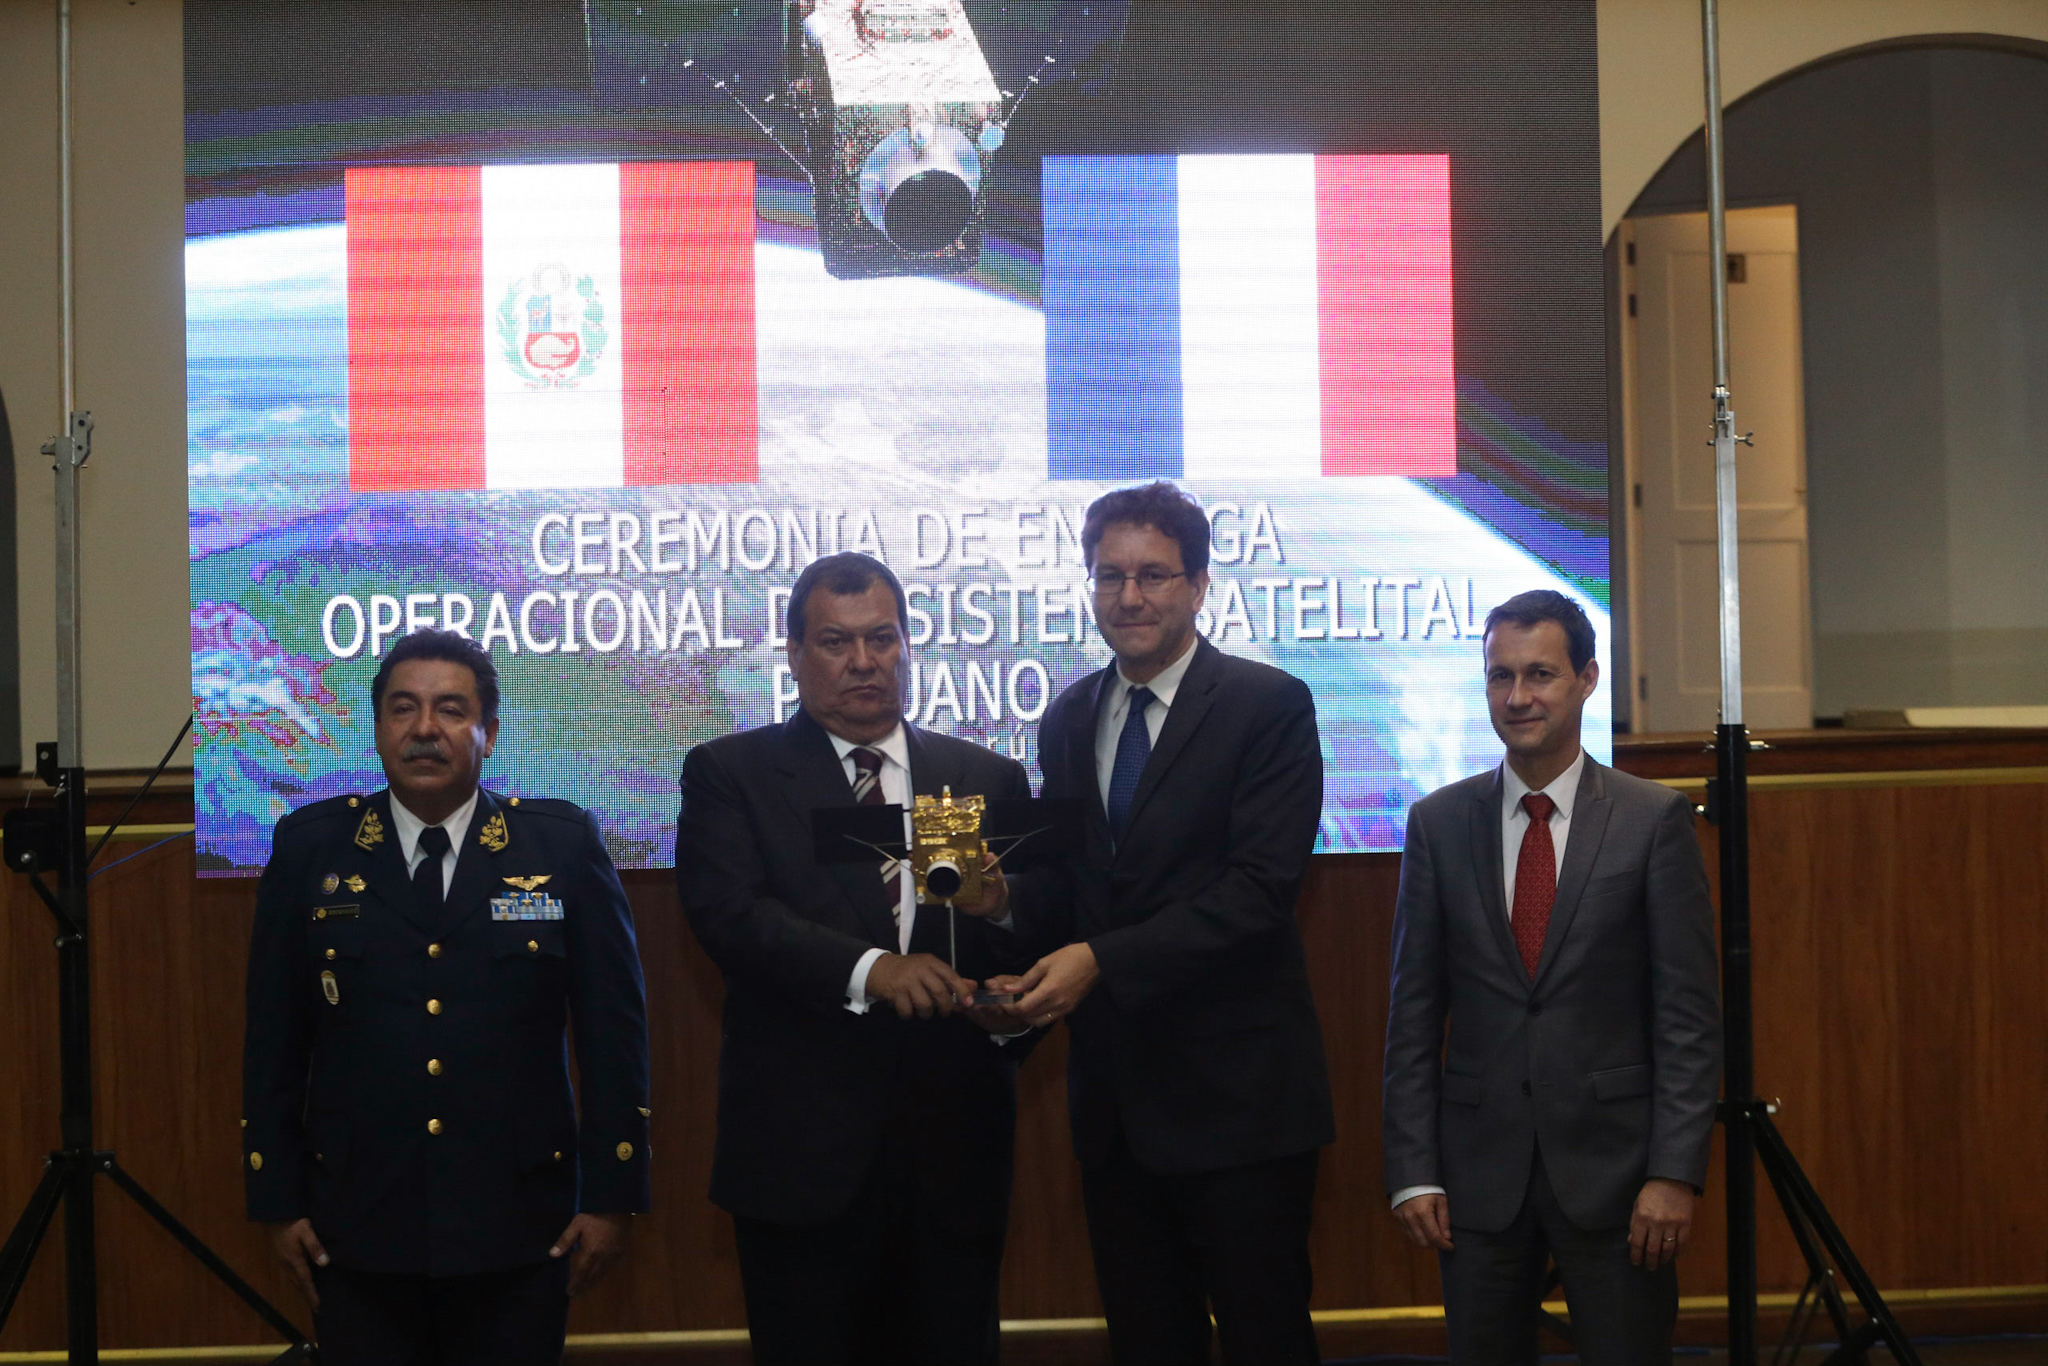 El ministro de Defensa, Jorge Nieto y el embajador de Francia, Fabrice Mauriès fueron parte de la ceremonia de entrega de las operaciones del satélite. (Difusión)